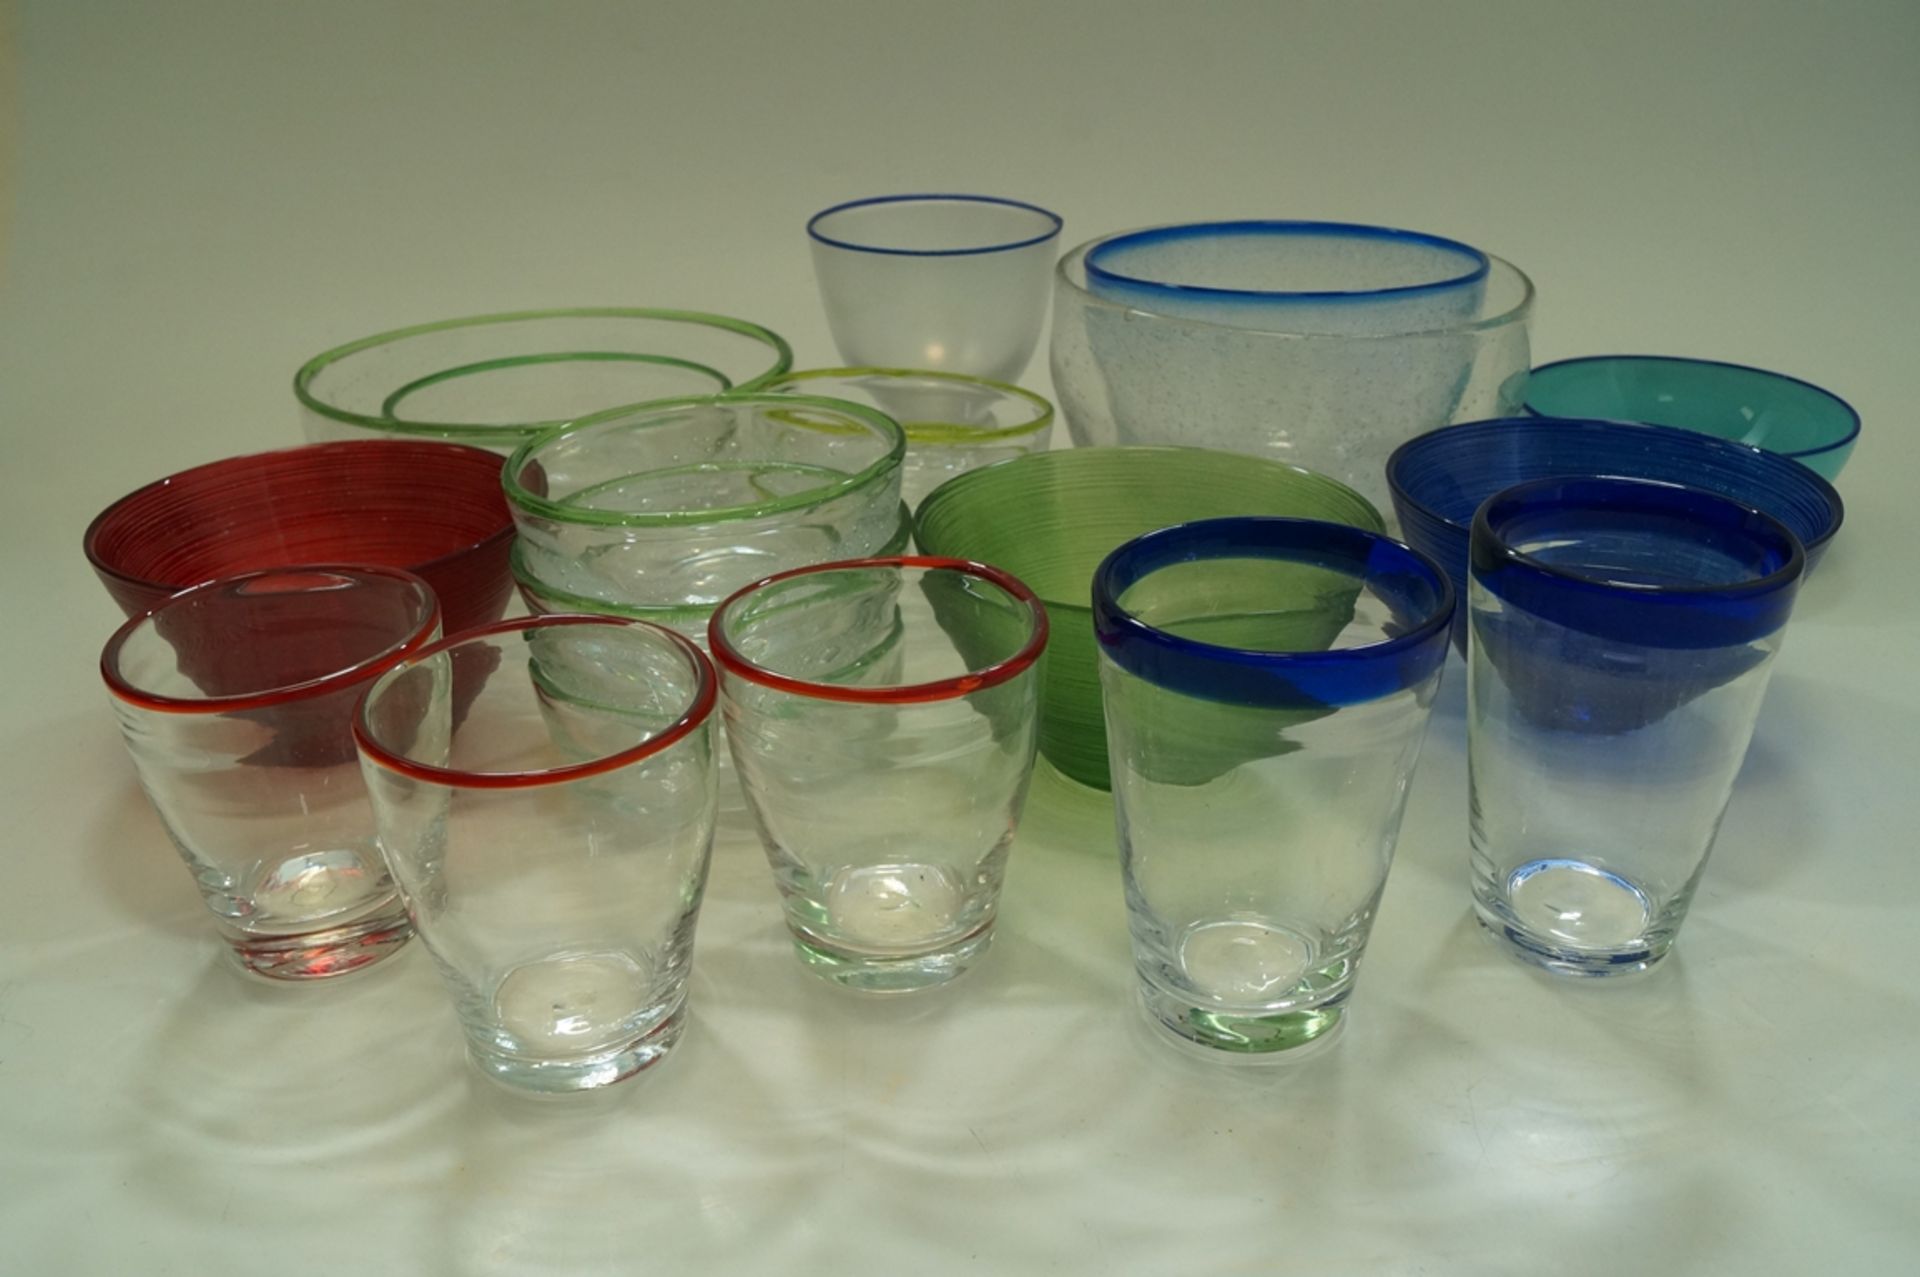 Großes Konvolut aus Handgearbeiteten Gebrauchsglasobjekten; in Summe 19 Teile Schüsseln und Gläser; - Image 2 of 4